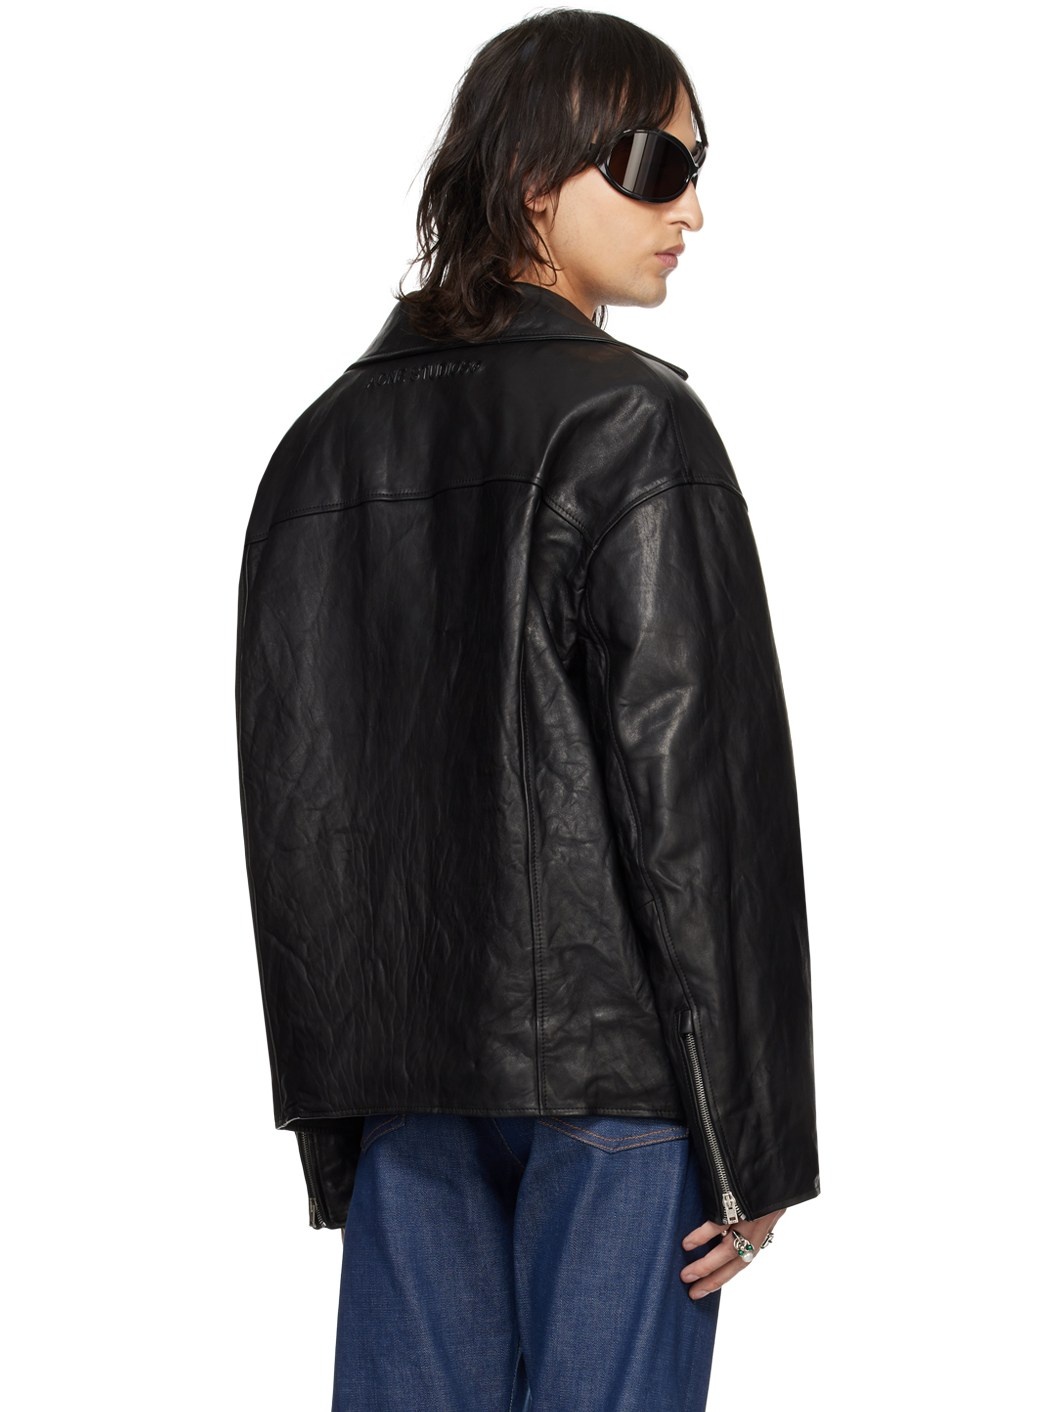 Black Distressed Leather Jacket - 3